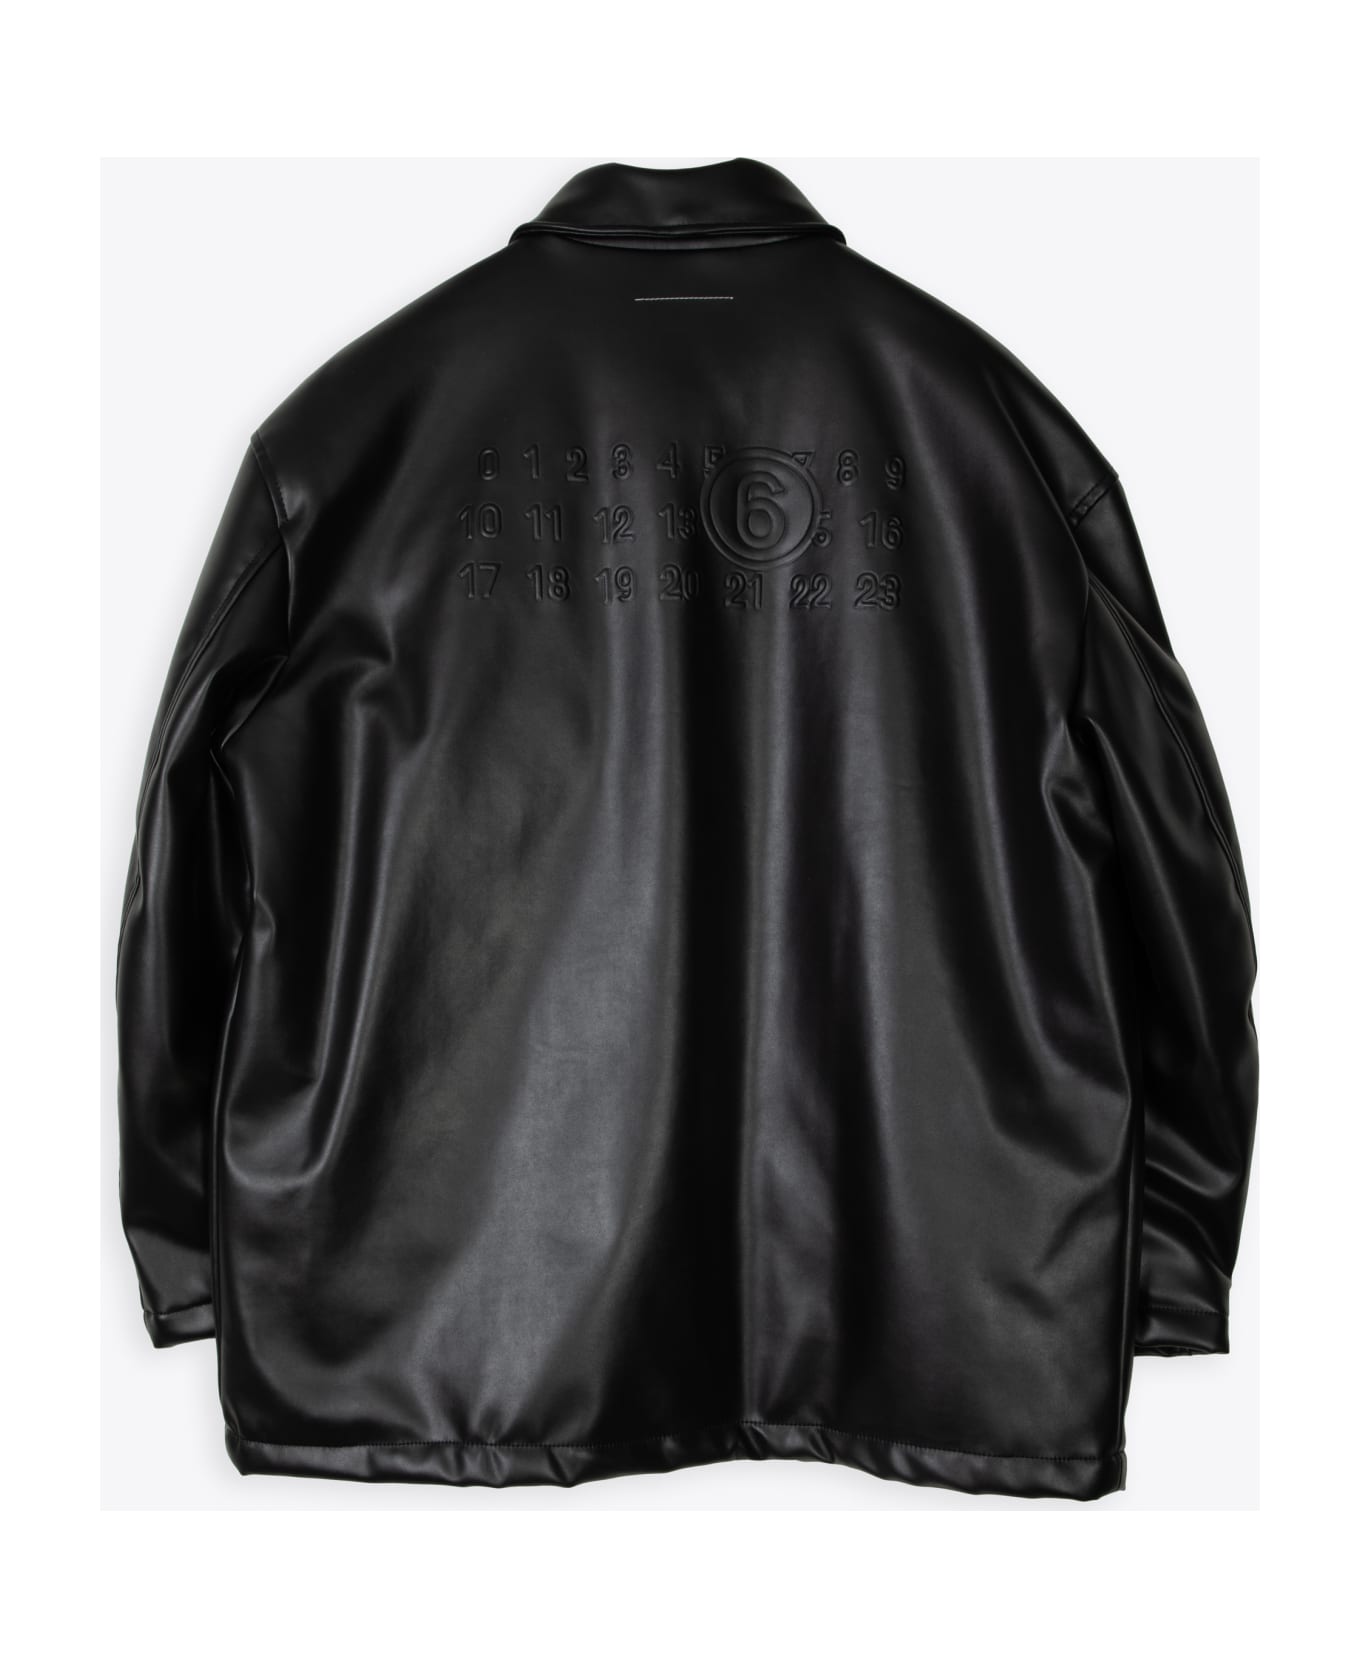 MM6 Maison Margiela Leather Car-coat - Nero レザージャケット